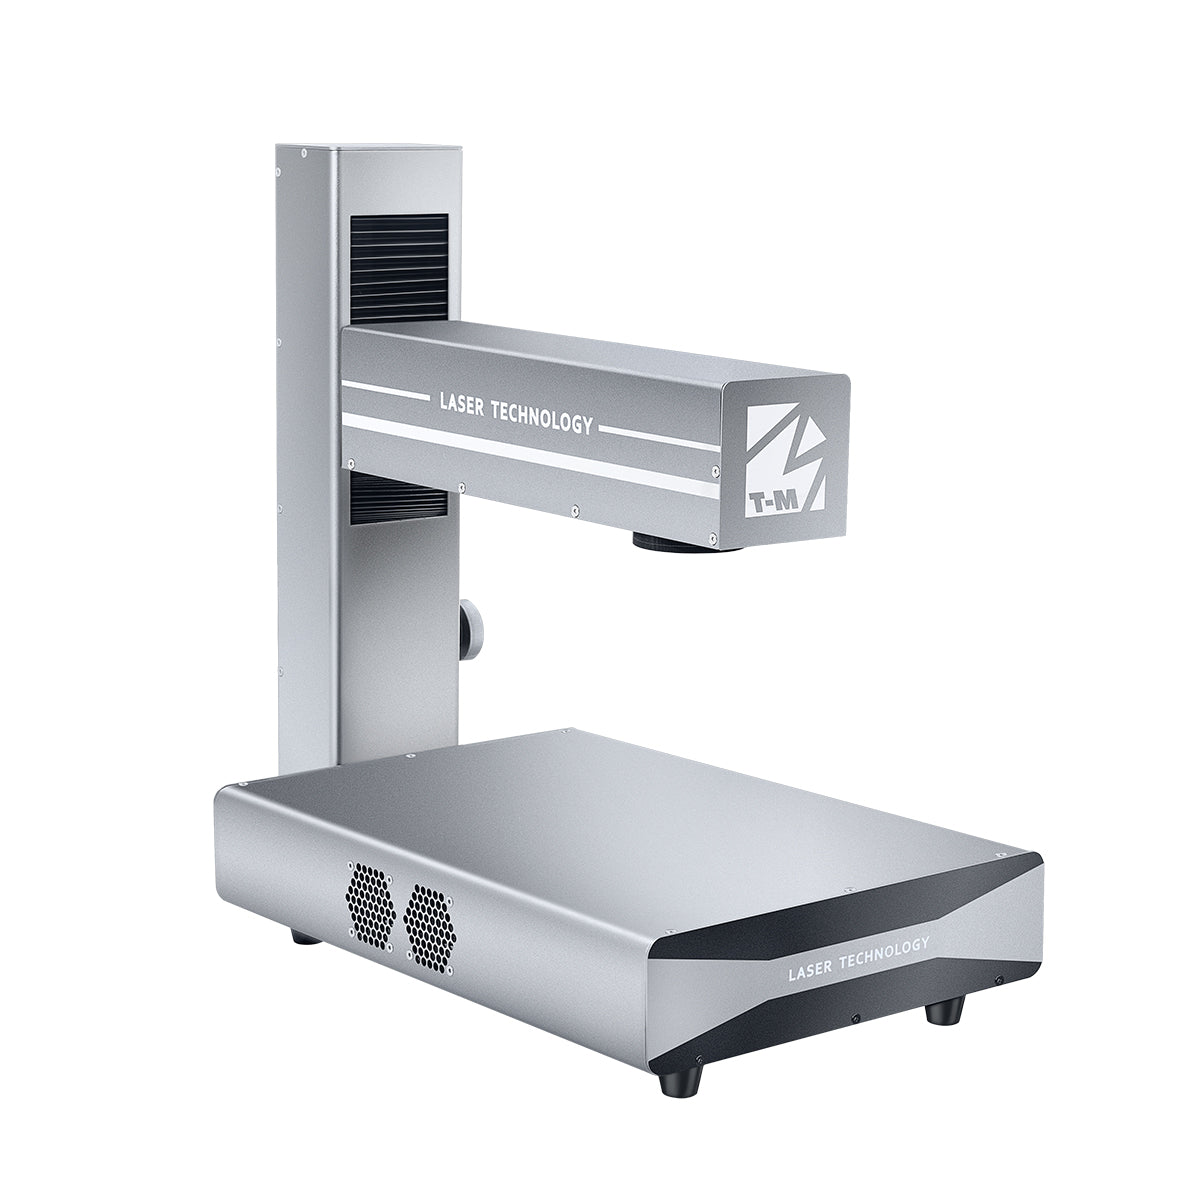 M-Triangel Mi-One Fiber laser marking machine